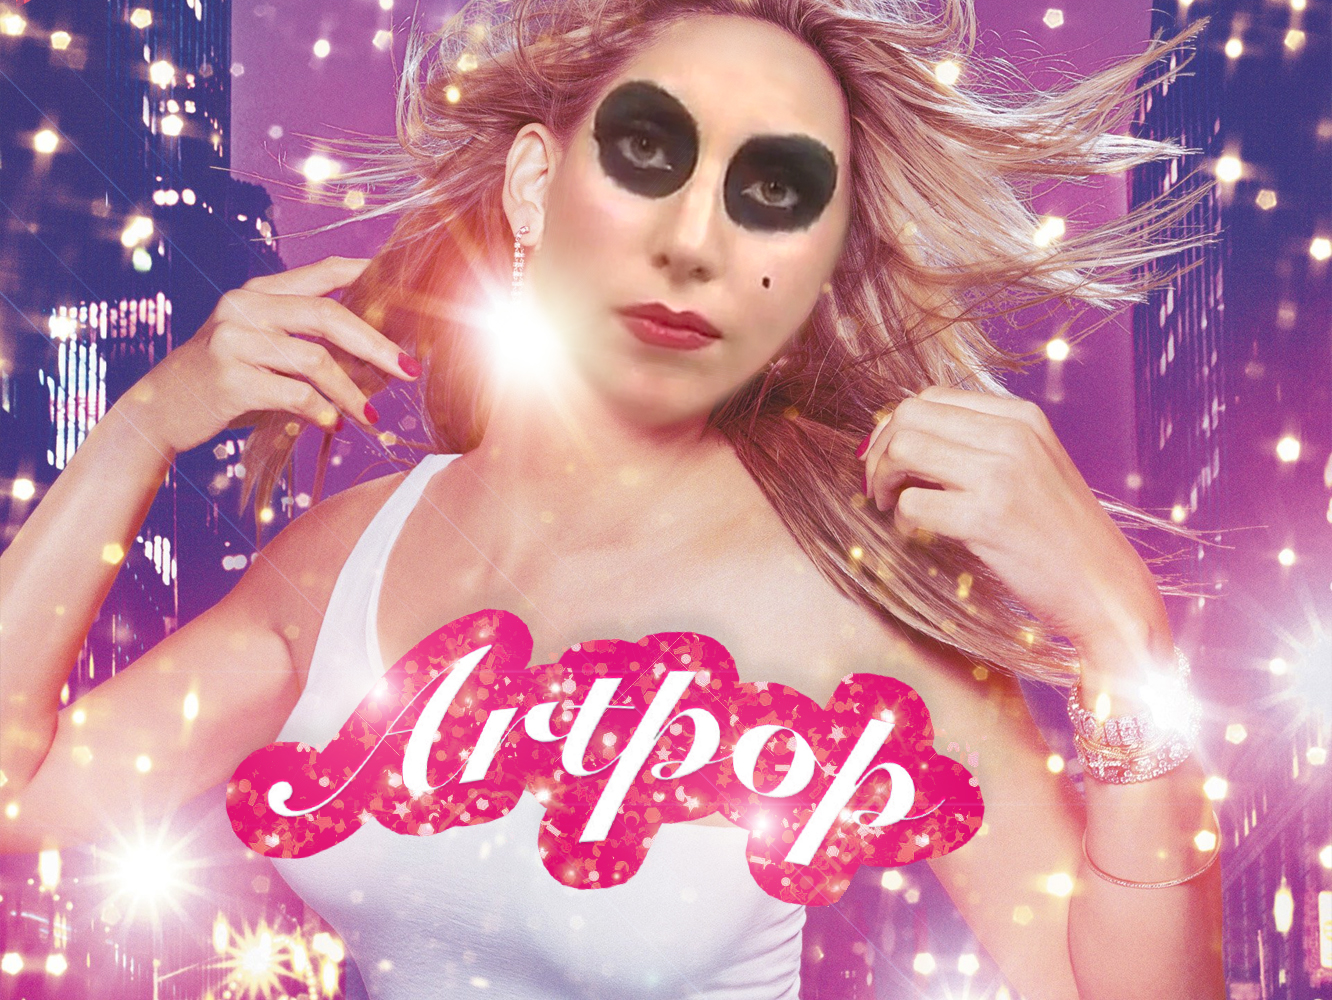  Lady Gaga se une a DJ White Shadow al hablar de ‘Artpop’: “Estaba desesperada y llena de dolor”